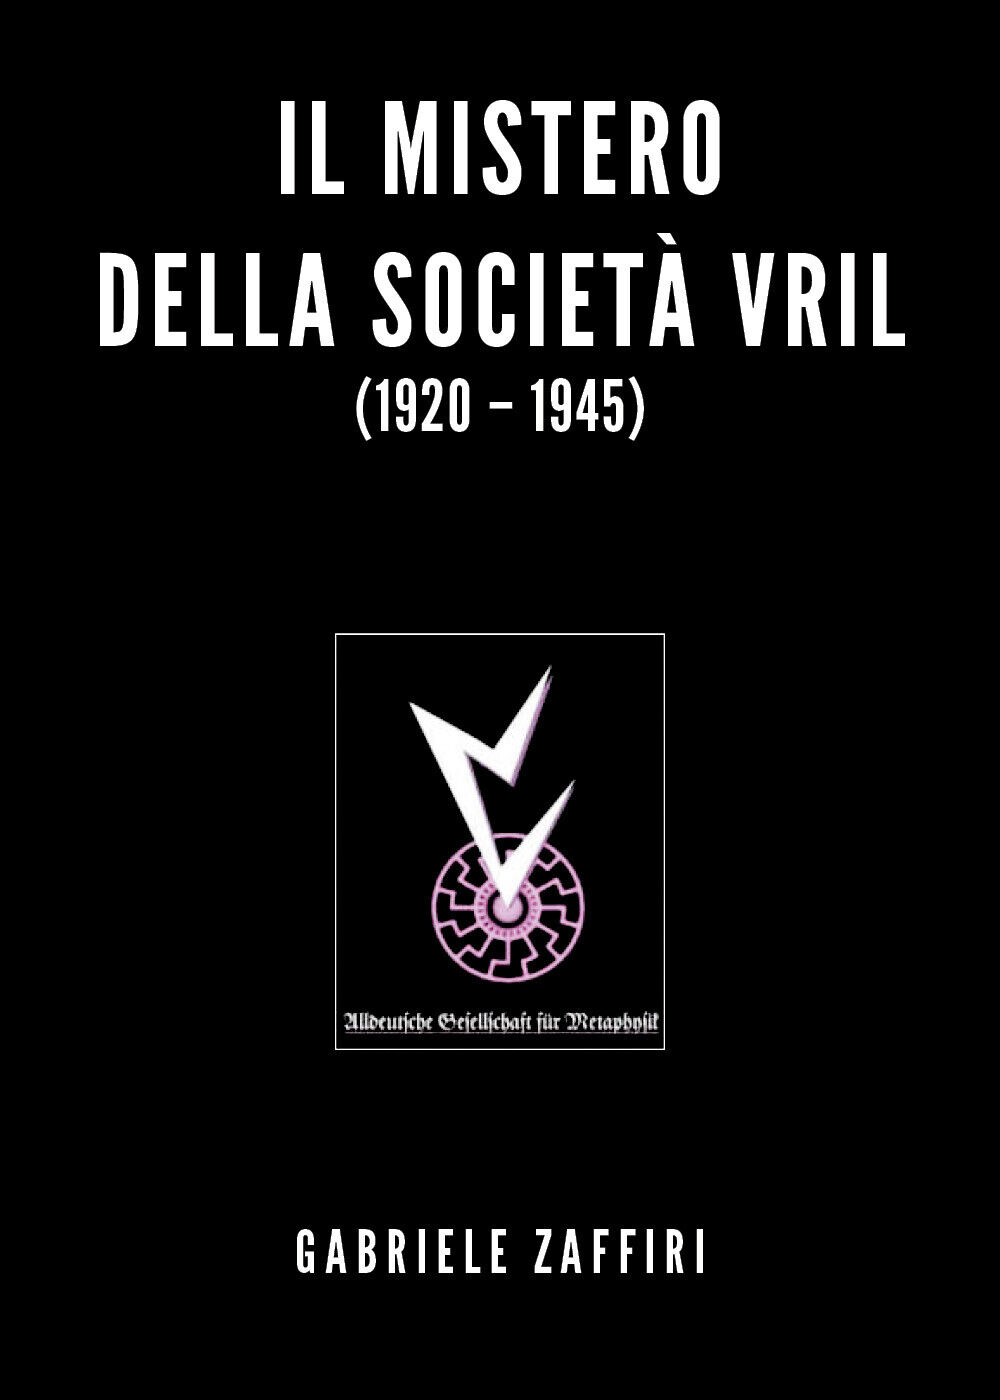 Il mistero della societ? Vril (1920-1945) di Gabriele Zaffiri,  2020,  Youcanpri